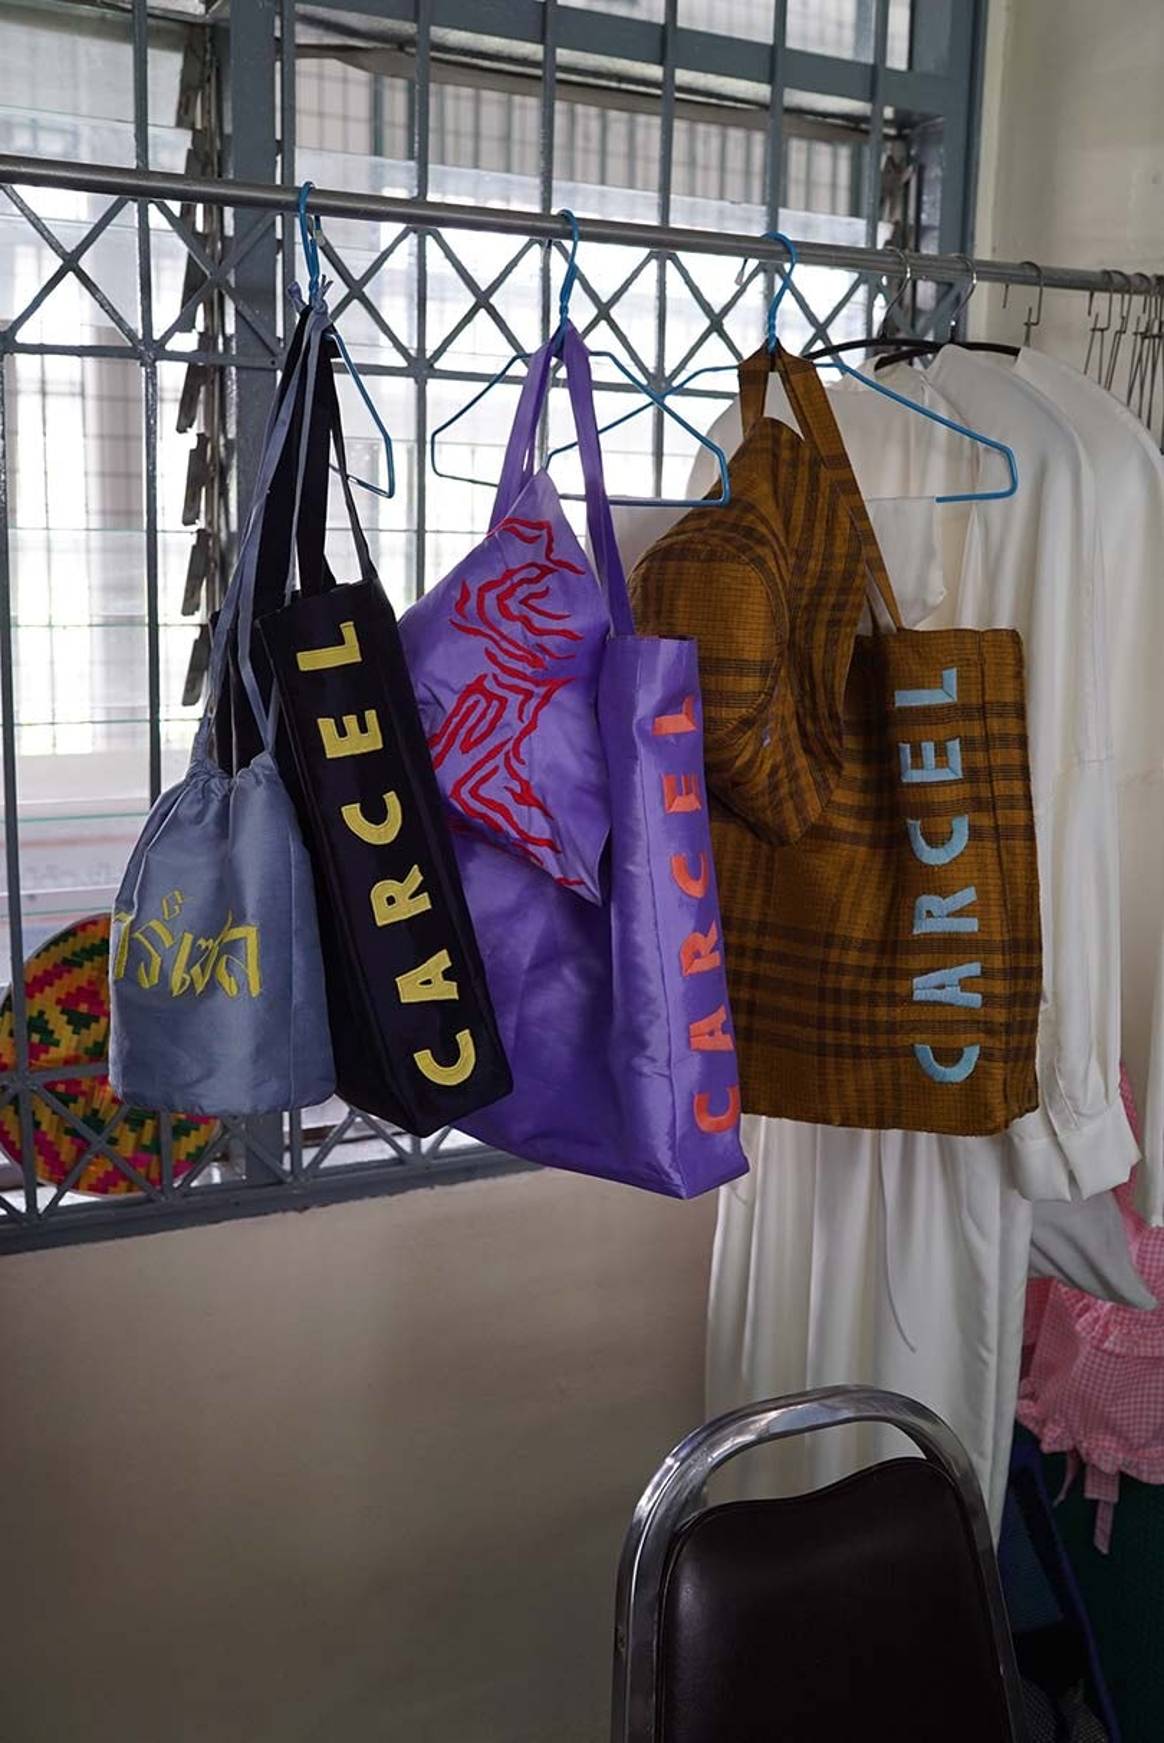 Carcel: Diese nachhaltige Marke eröffnet Frauen im Gefängnis neue Chancen